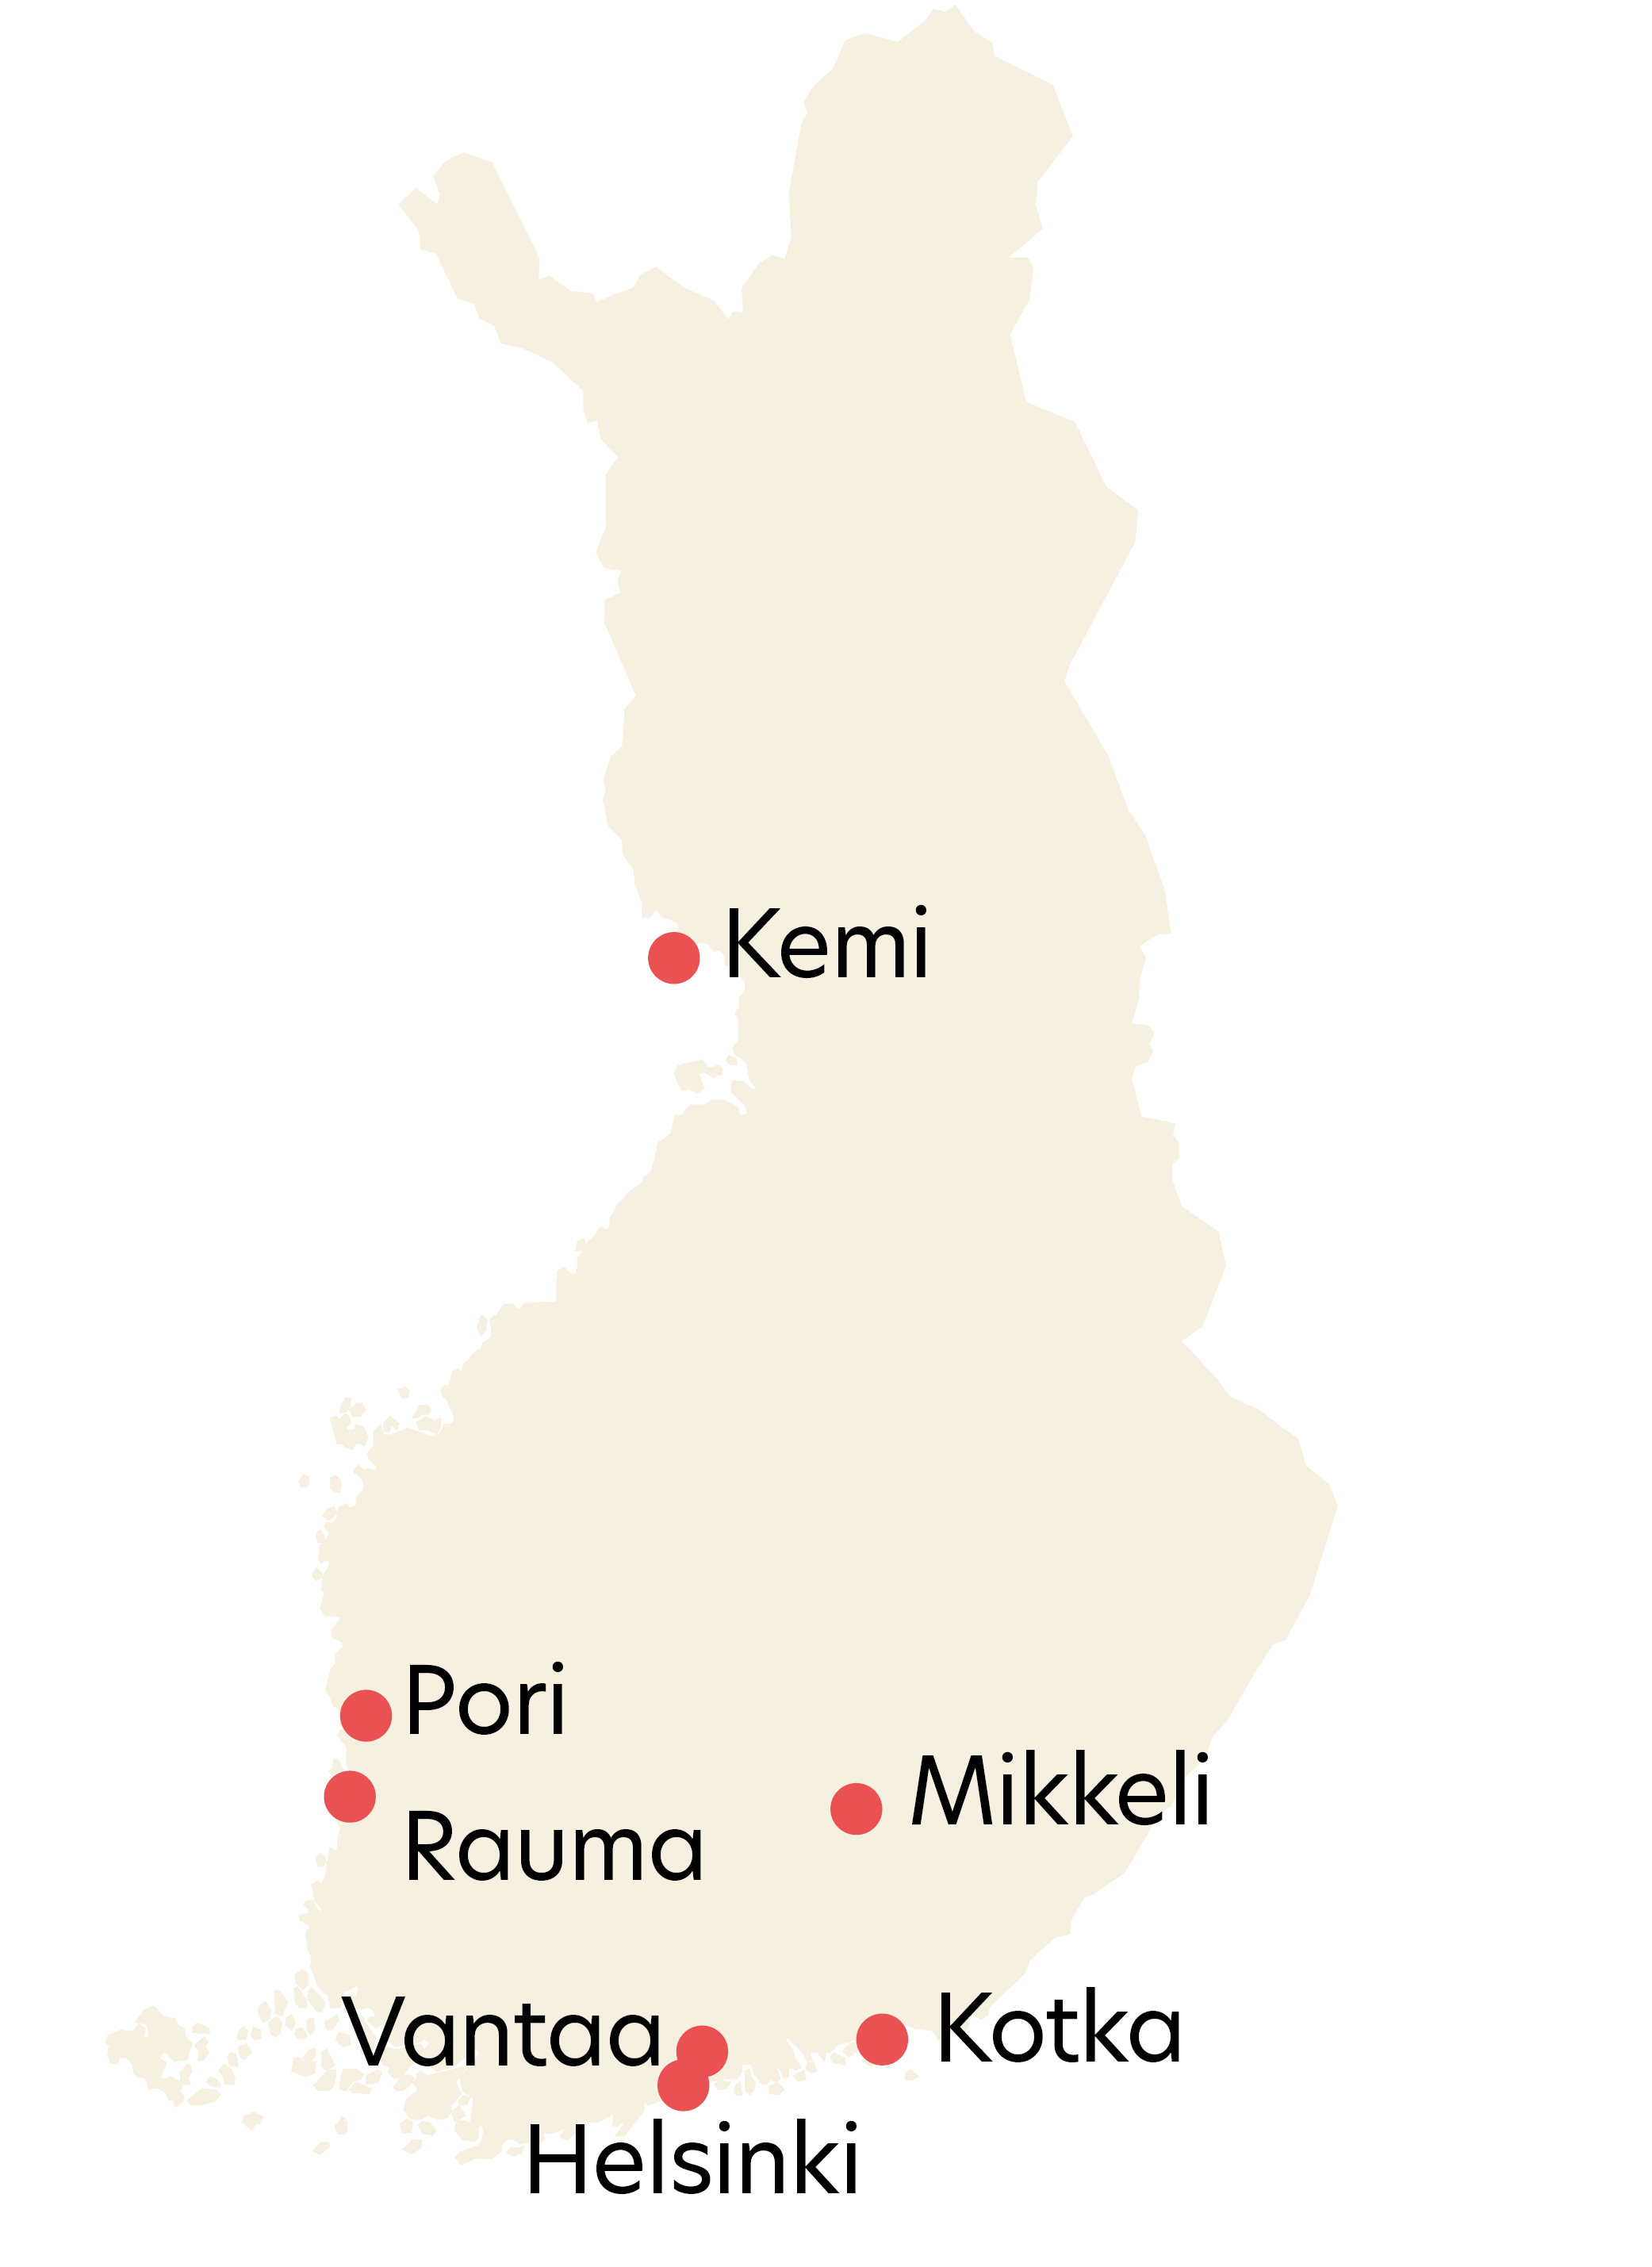 Suomen karttaan on merkitty arkistoaineistojen paikkakuntien sijainnit ja nimet: Helsinki, Vantaa, Kotka, Rauma, Pori, Mikkeli ja Kemi.